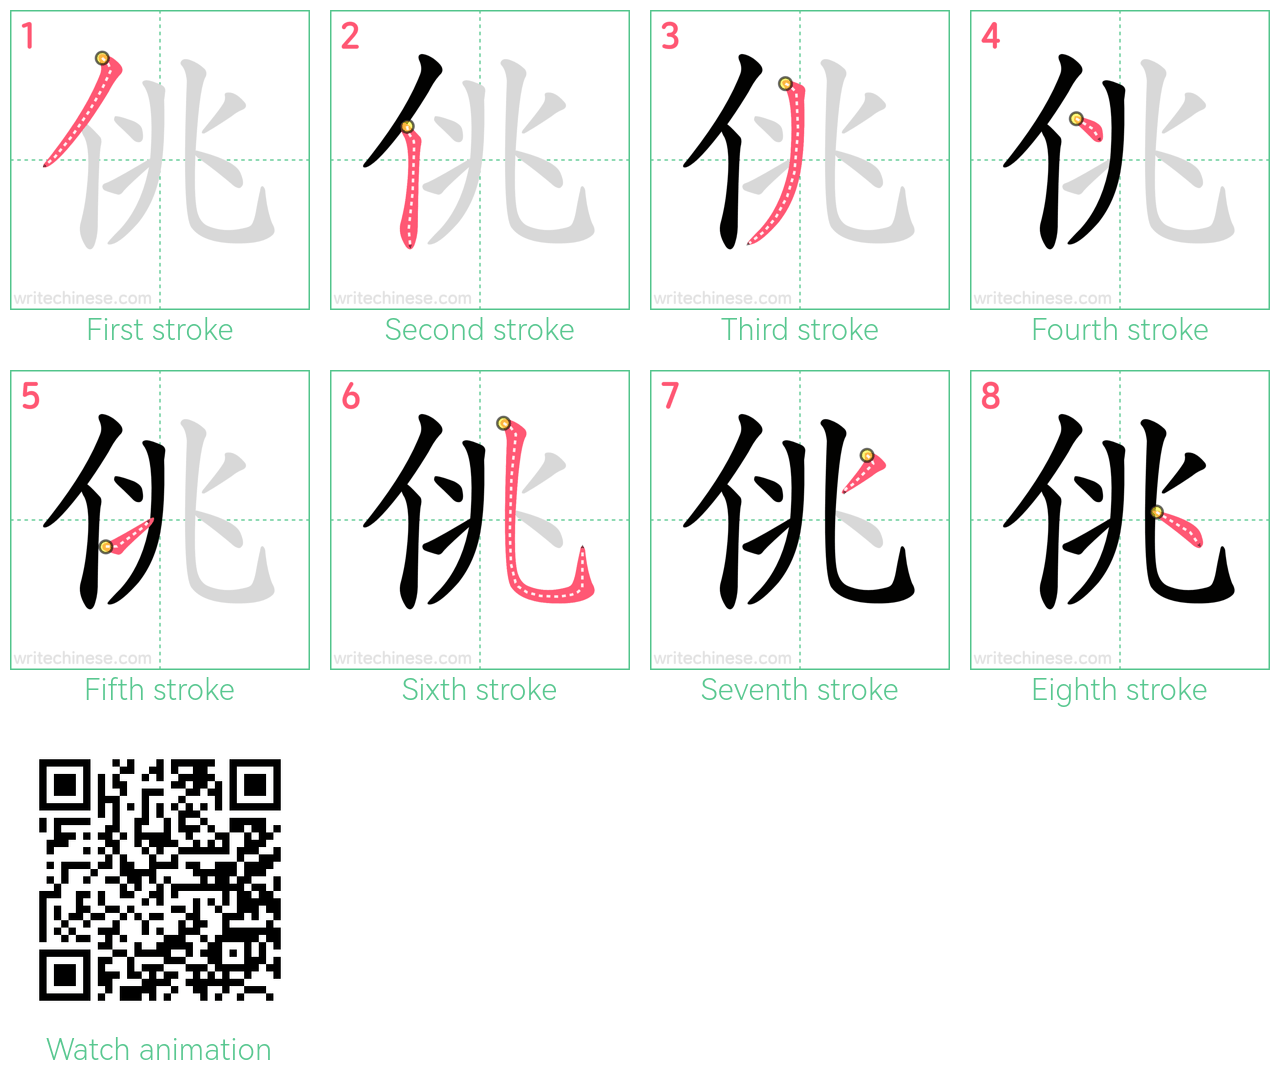 佻 step-by-step stroke order diagrams